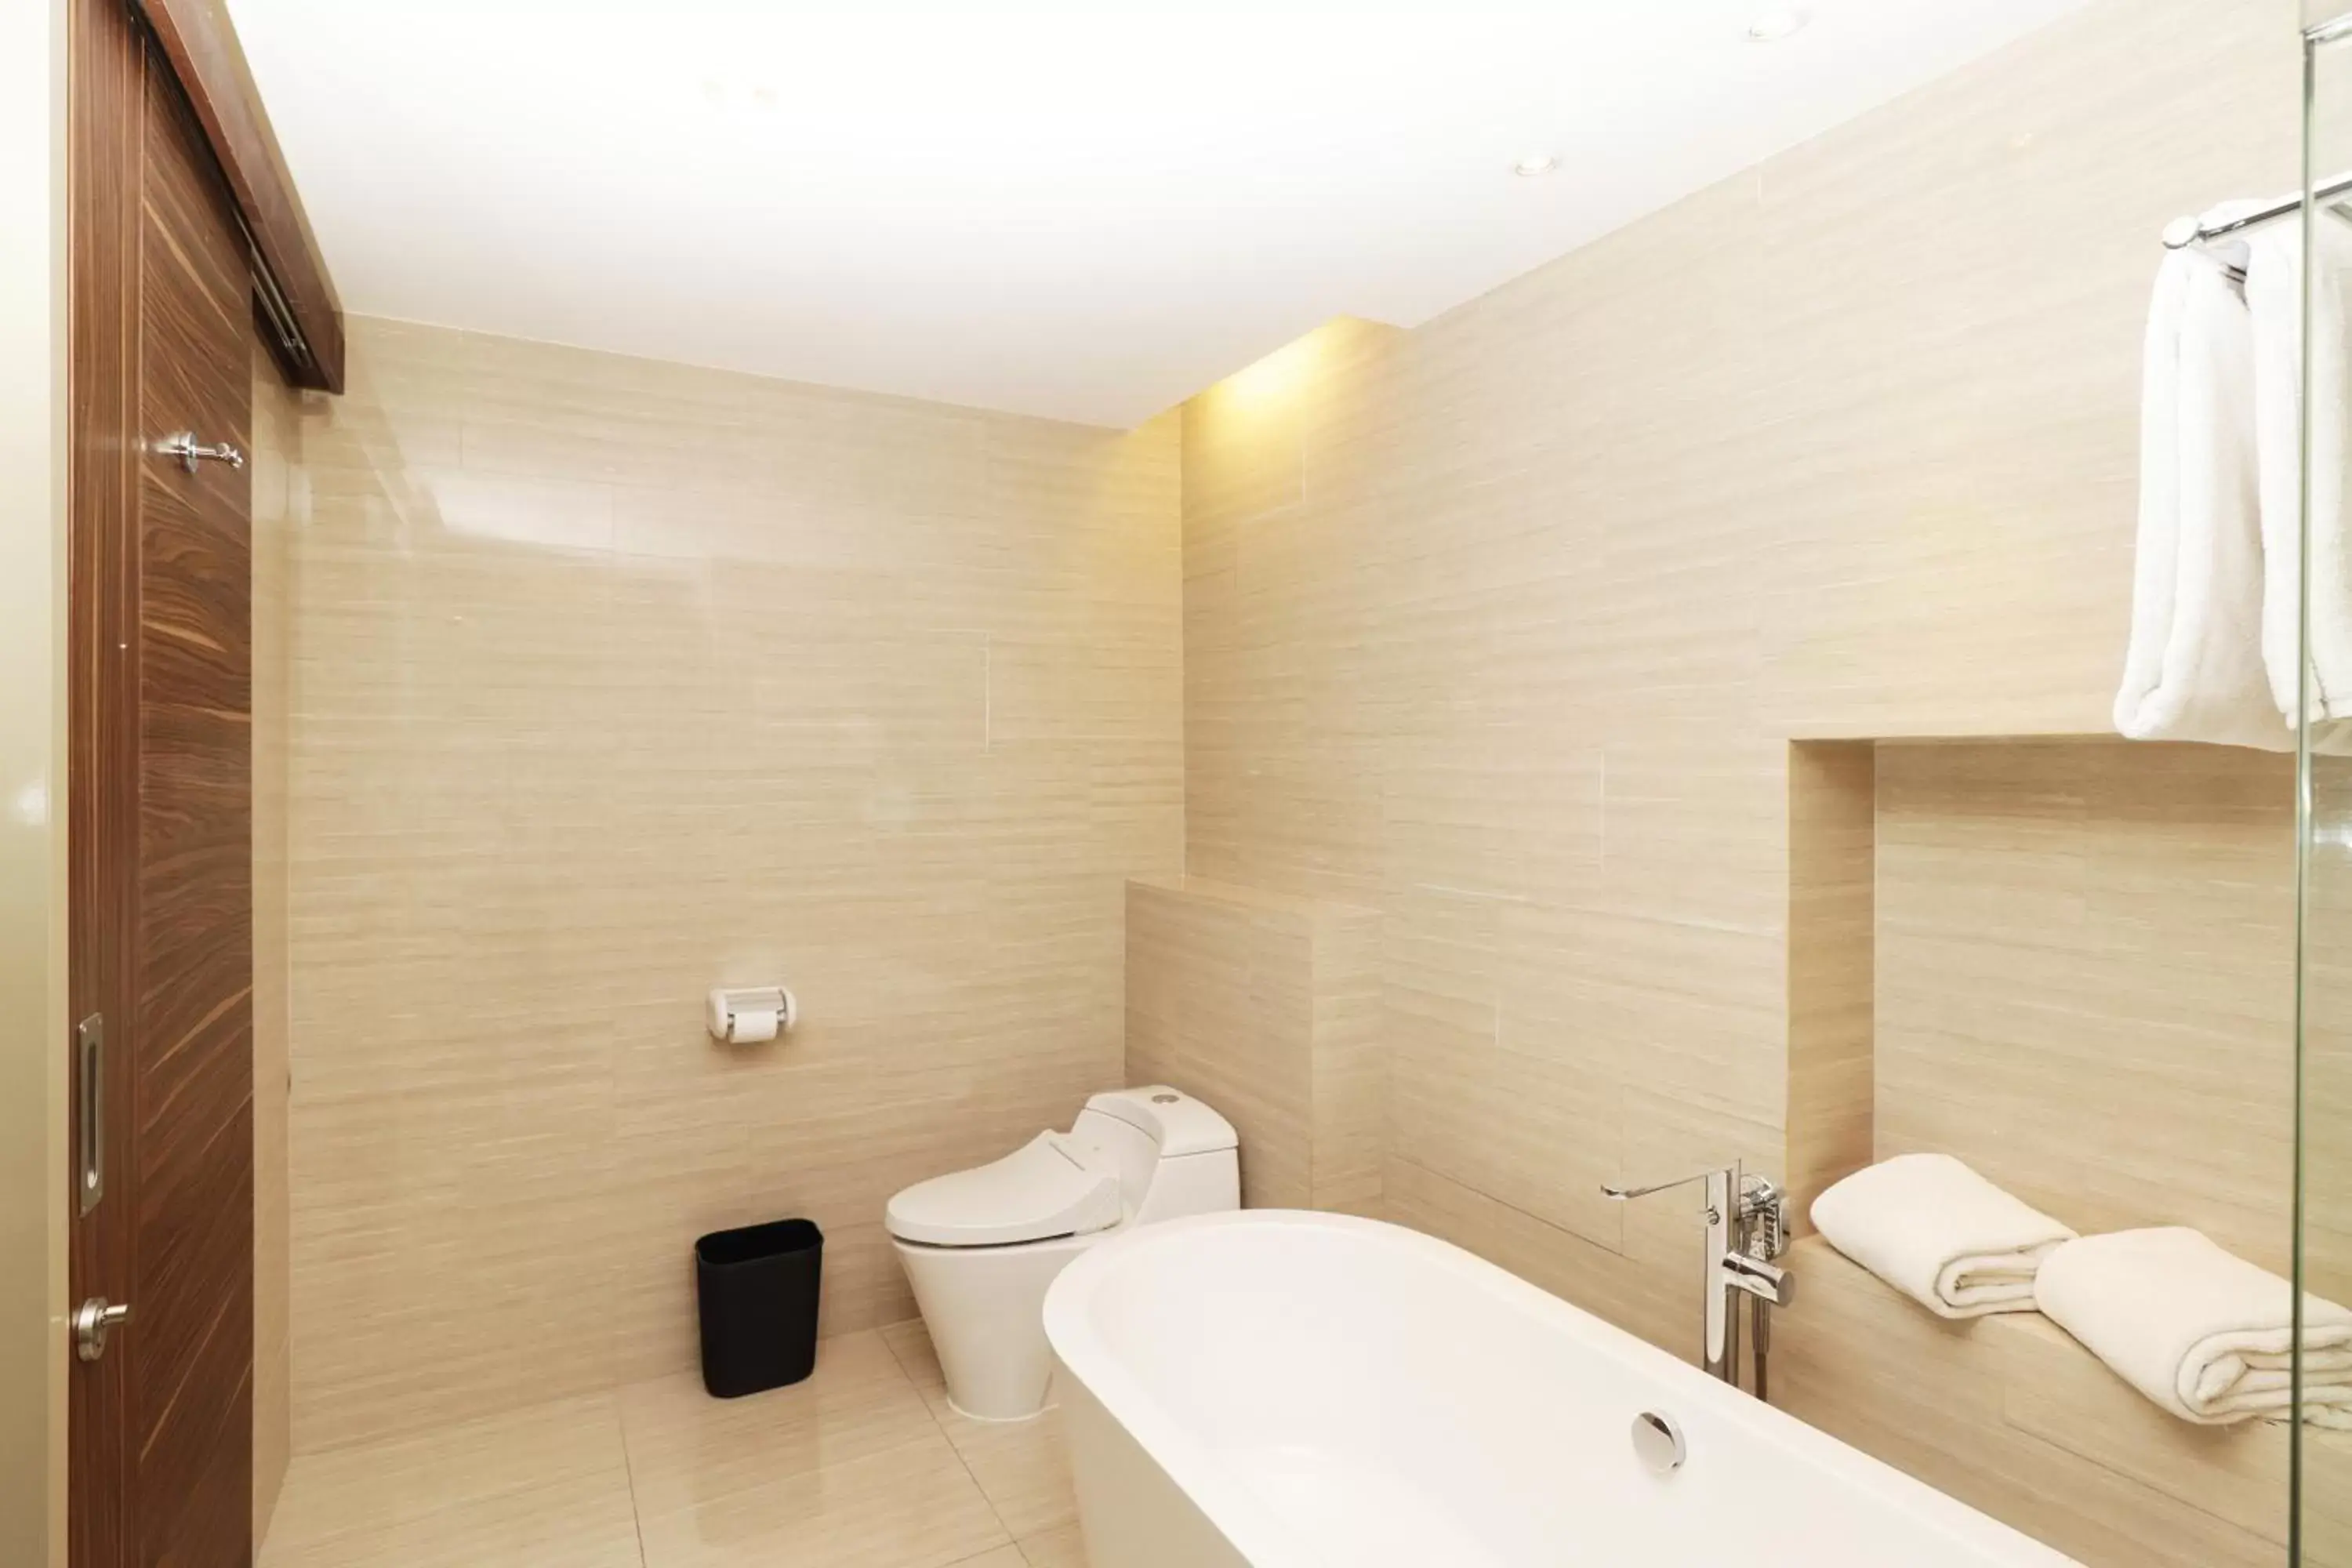 Toilet, Bathroom in Swiss-Belhotel Cirebon